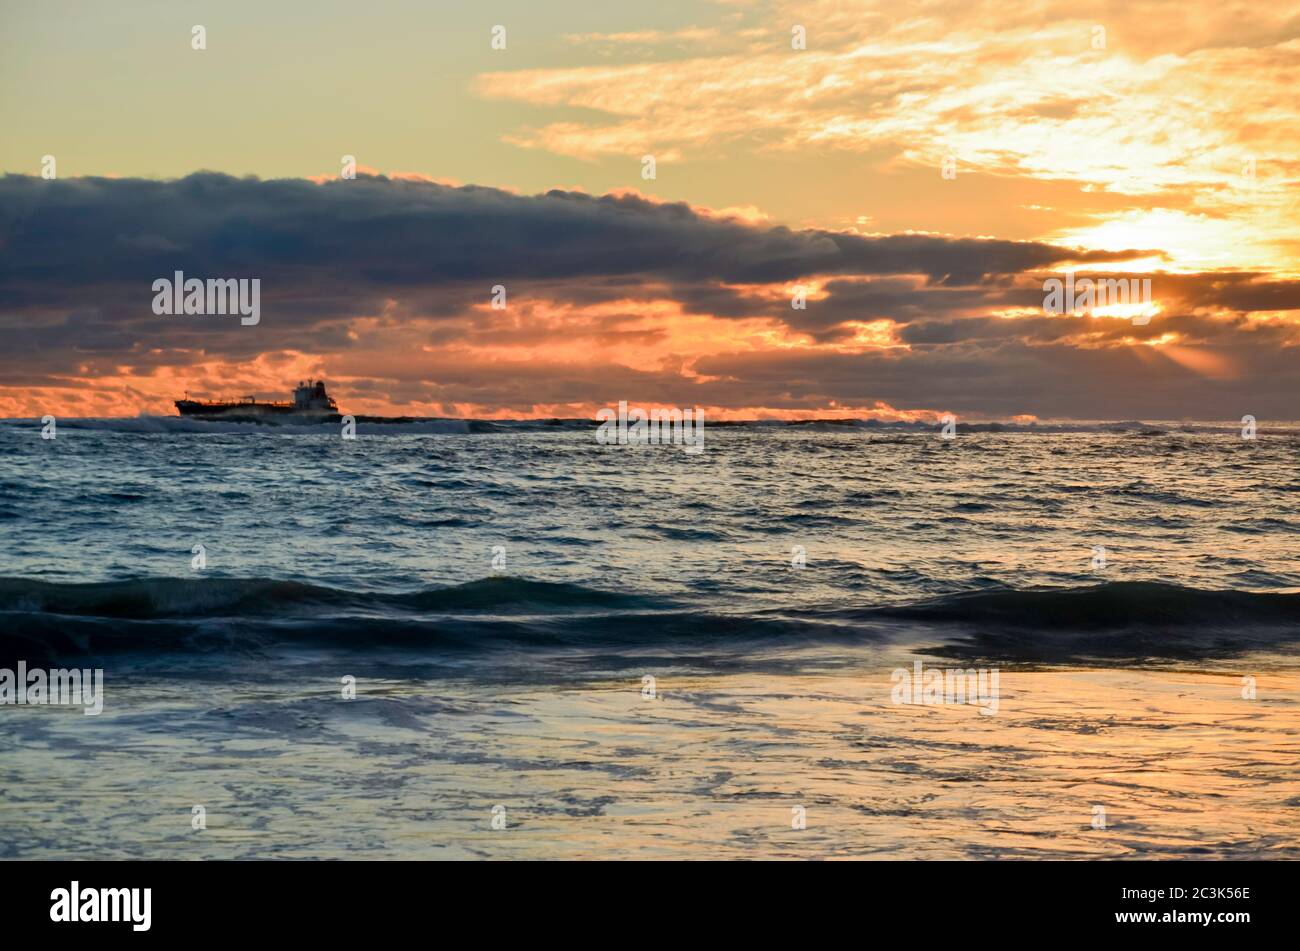 Un cargo côtier (cargo) silhouetté se déplace vers le sud sur la côte ouest de l'Australie au coucher du soleil Banque D'Images